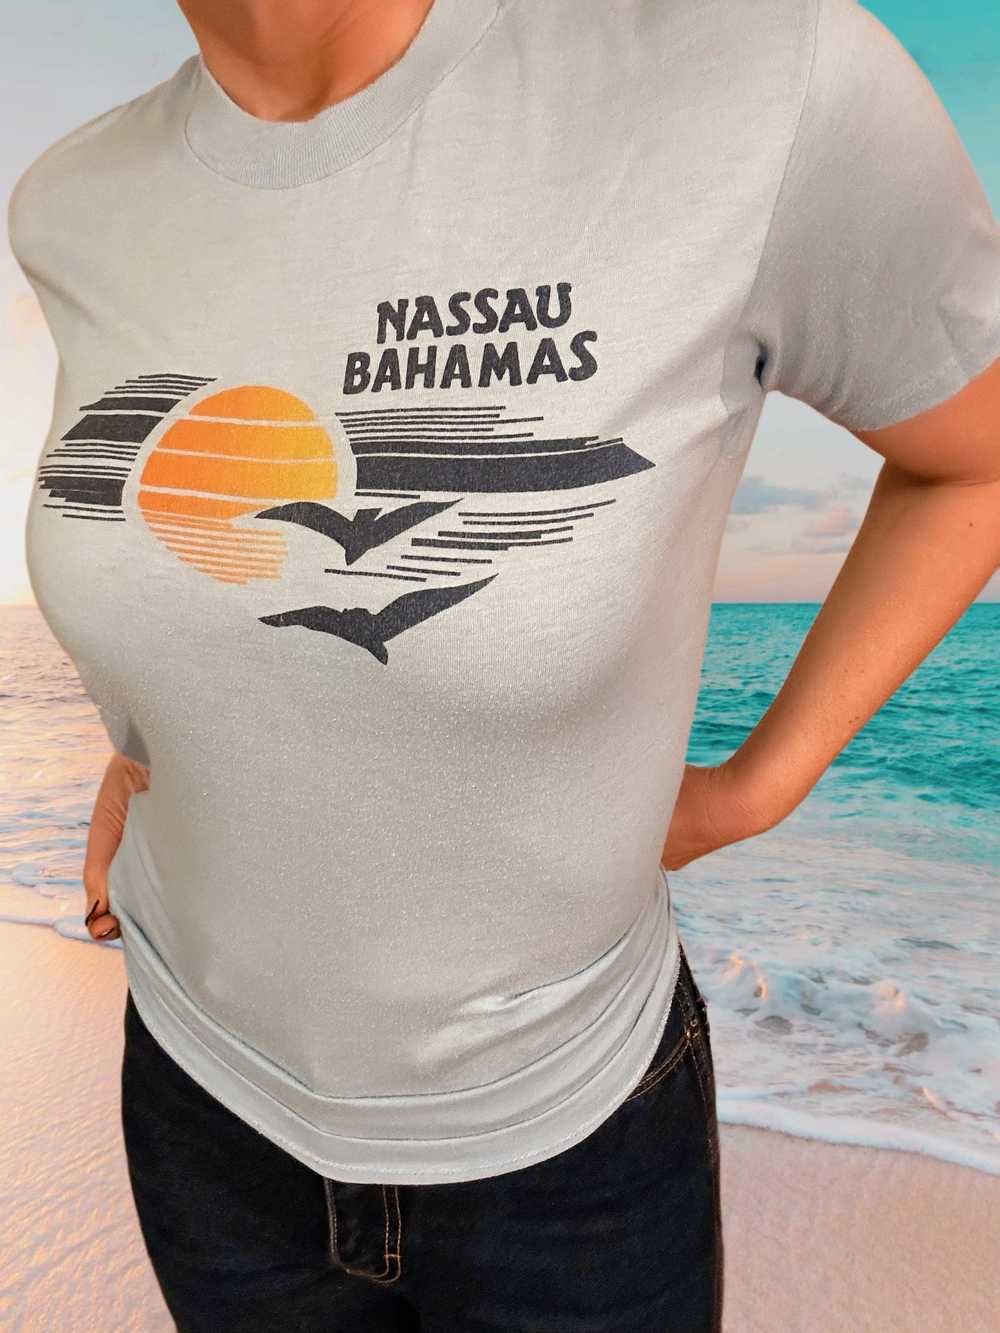 Nassau Bahamas T-shirt - image 2